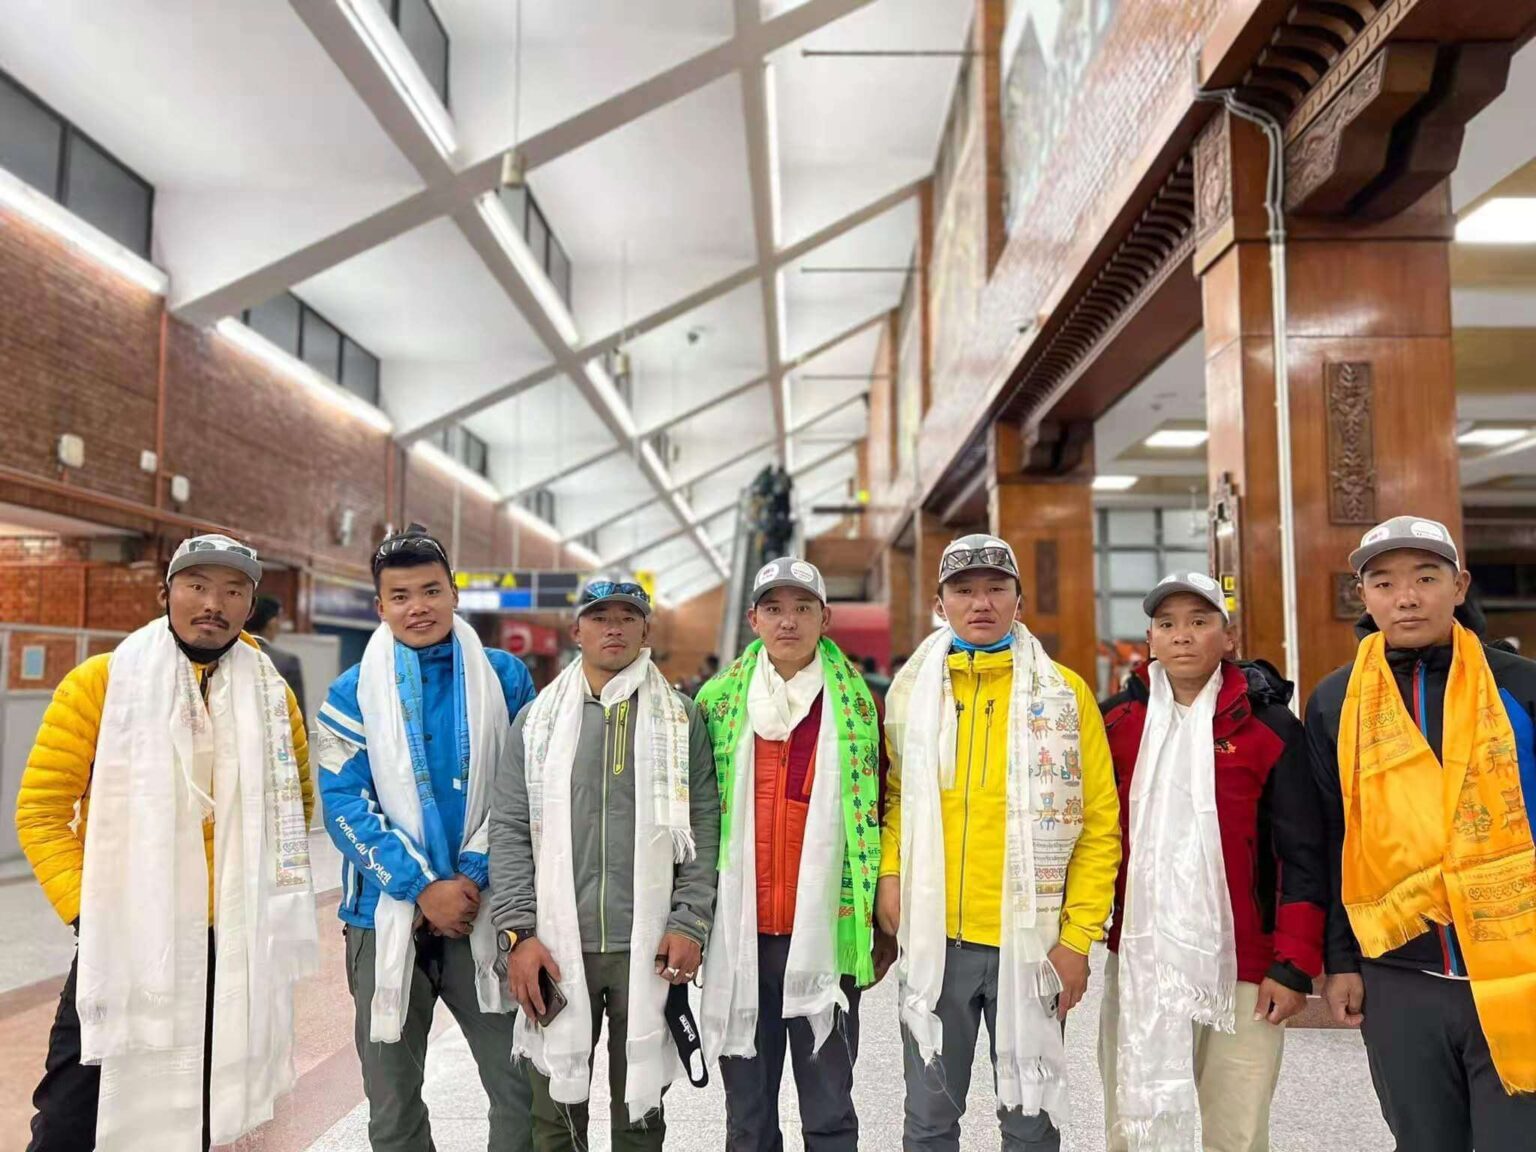 команда Грейс Цзэн в состав которой входят непальские альпинисты-шерпы прибыла в город Скарду